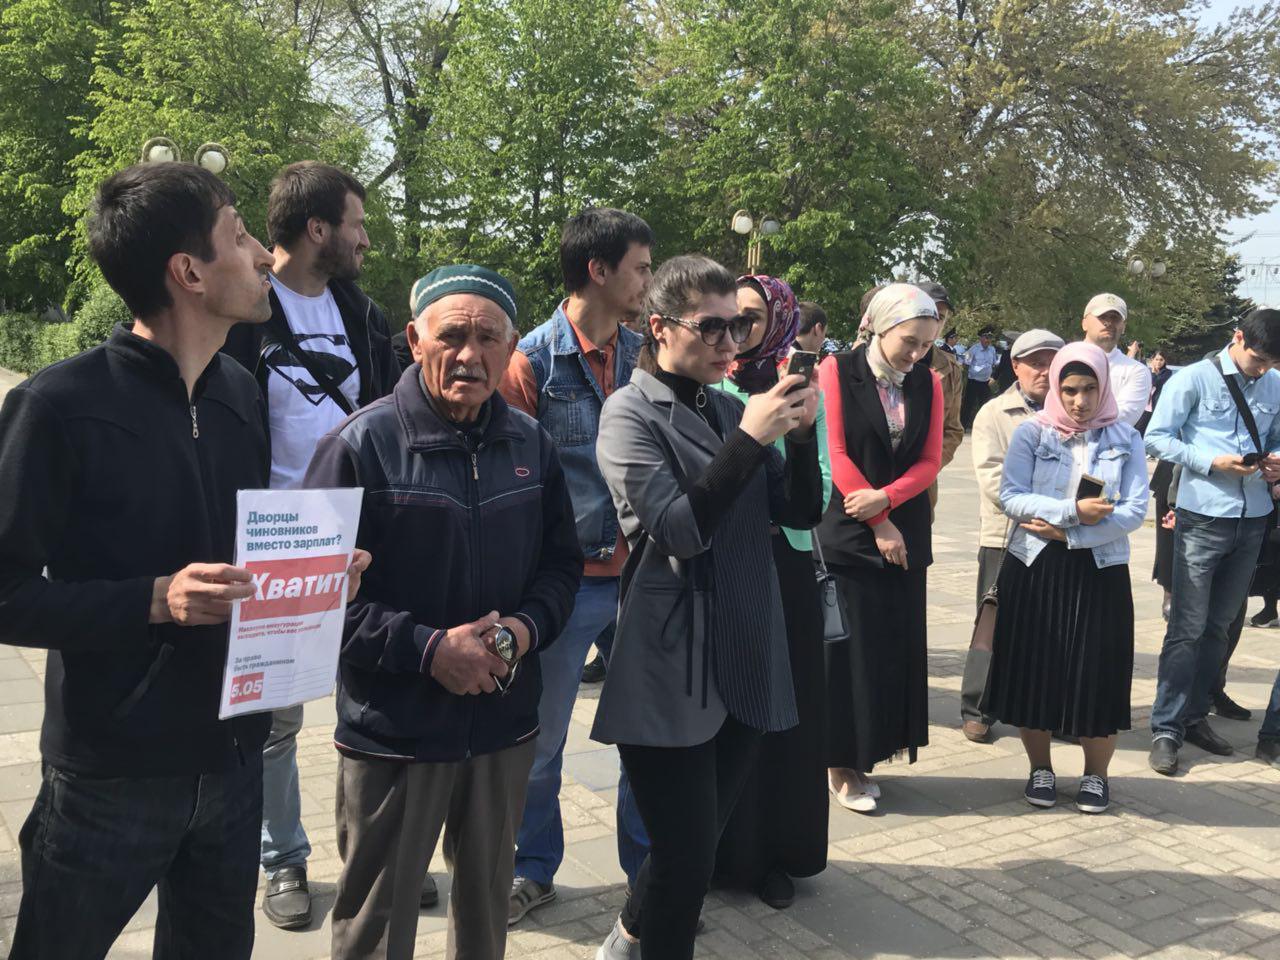 Участники митинга в Махачкале. 5 мая 2018 года. Фото патимат Махмудовой для "Кавказского узла".